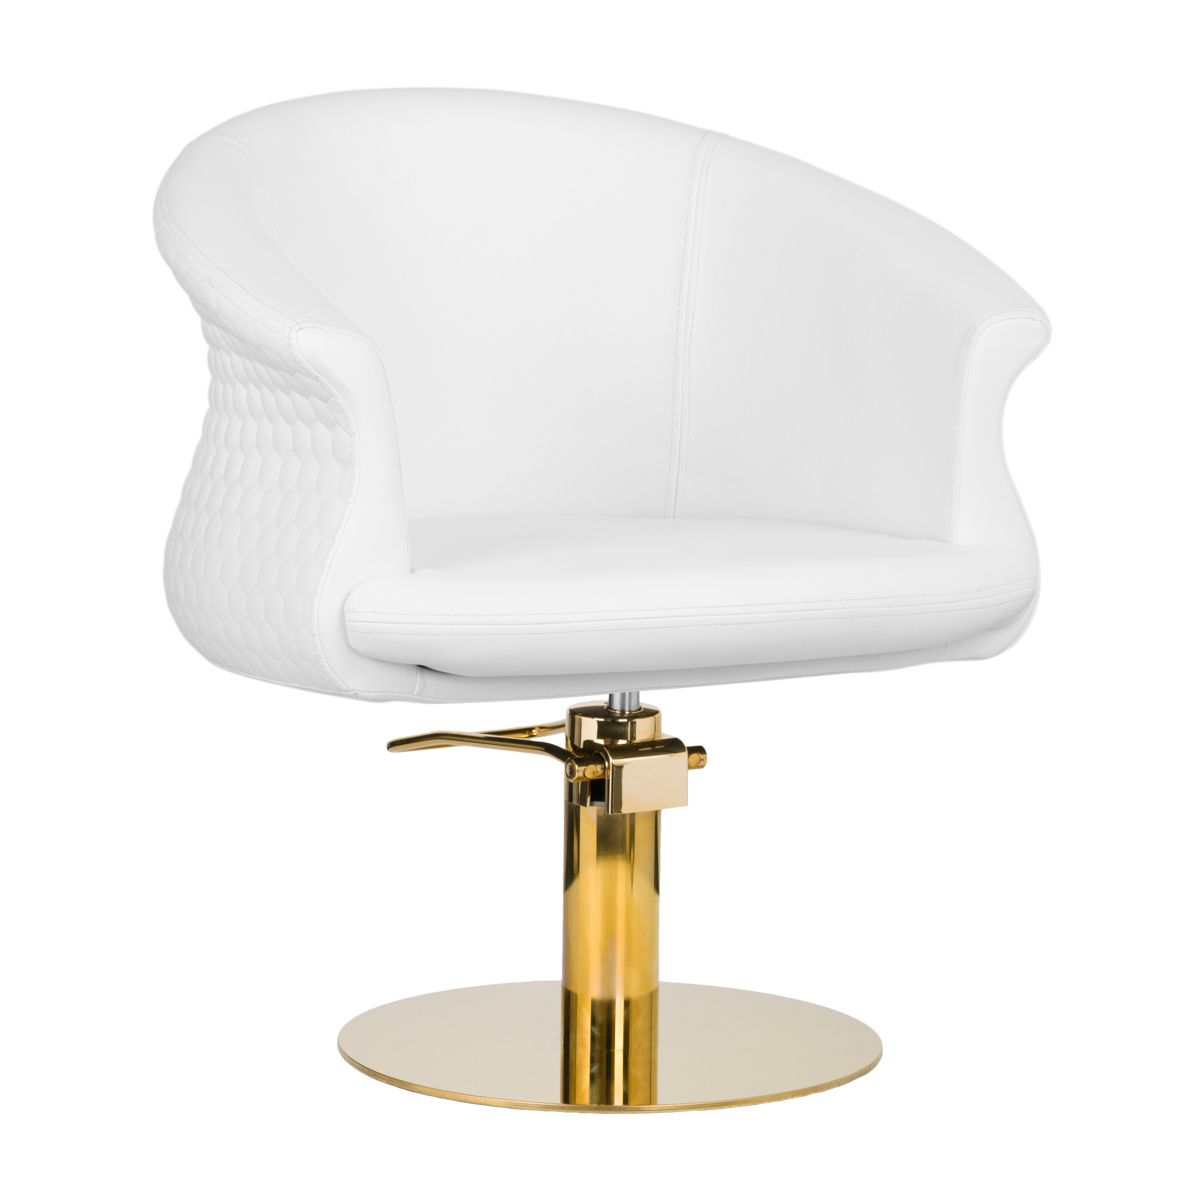  Hair salon chair Versal Gold White - 0135421 HAIR SALON CHAIRS 